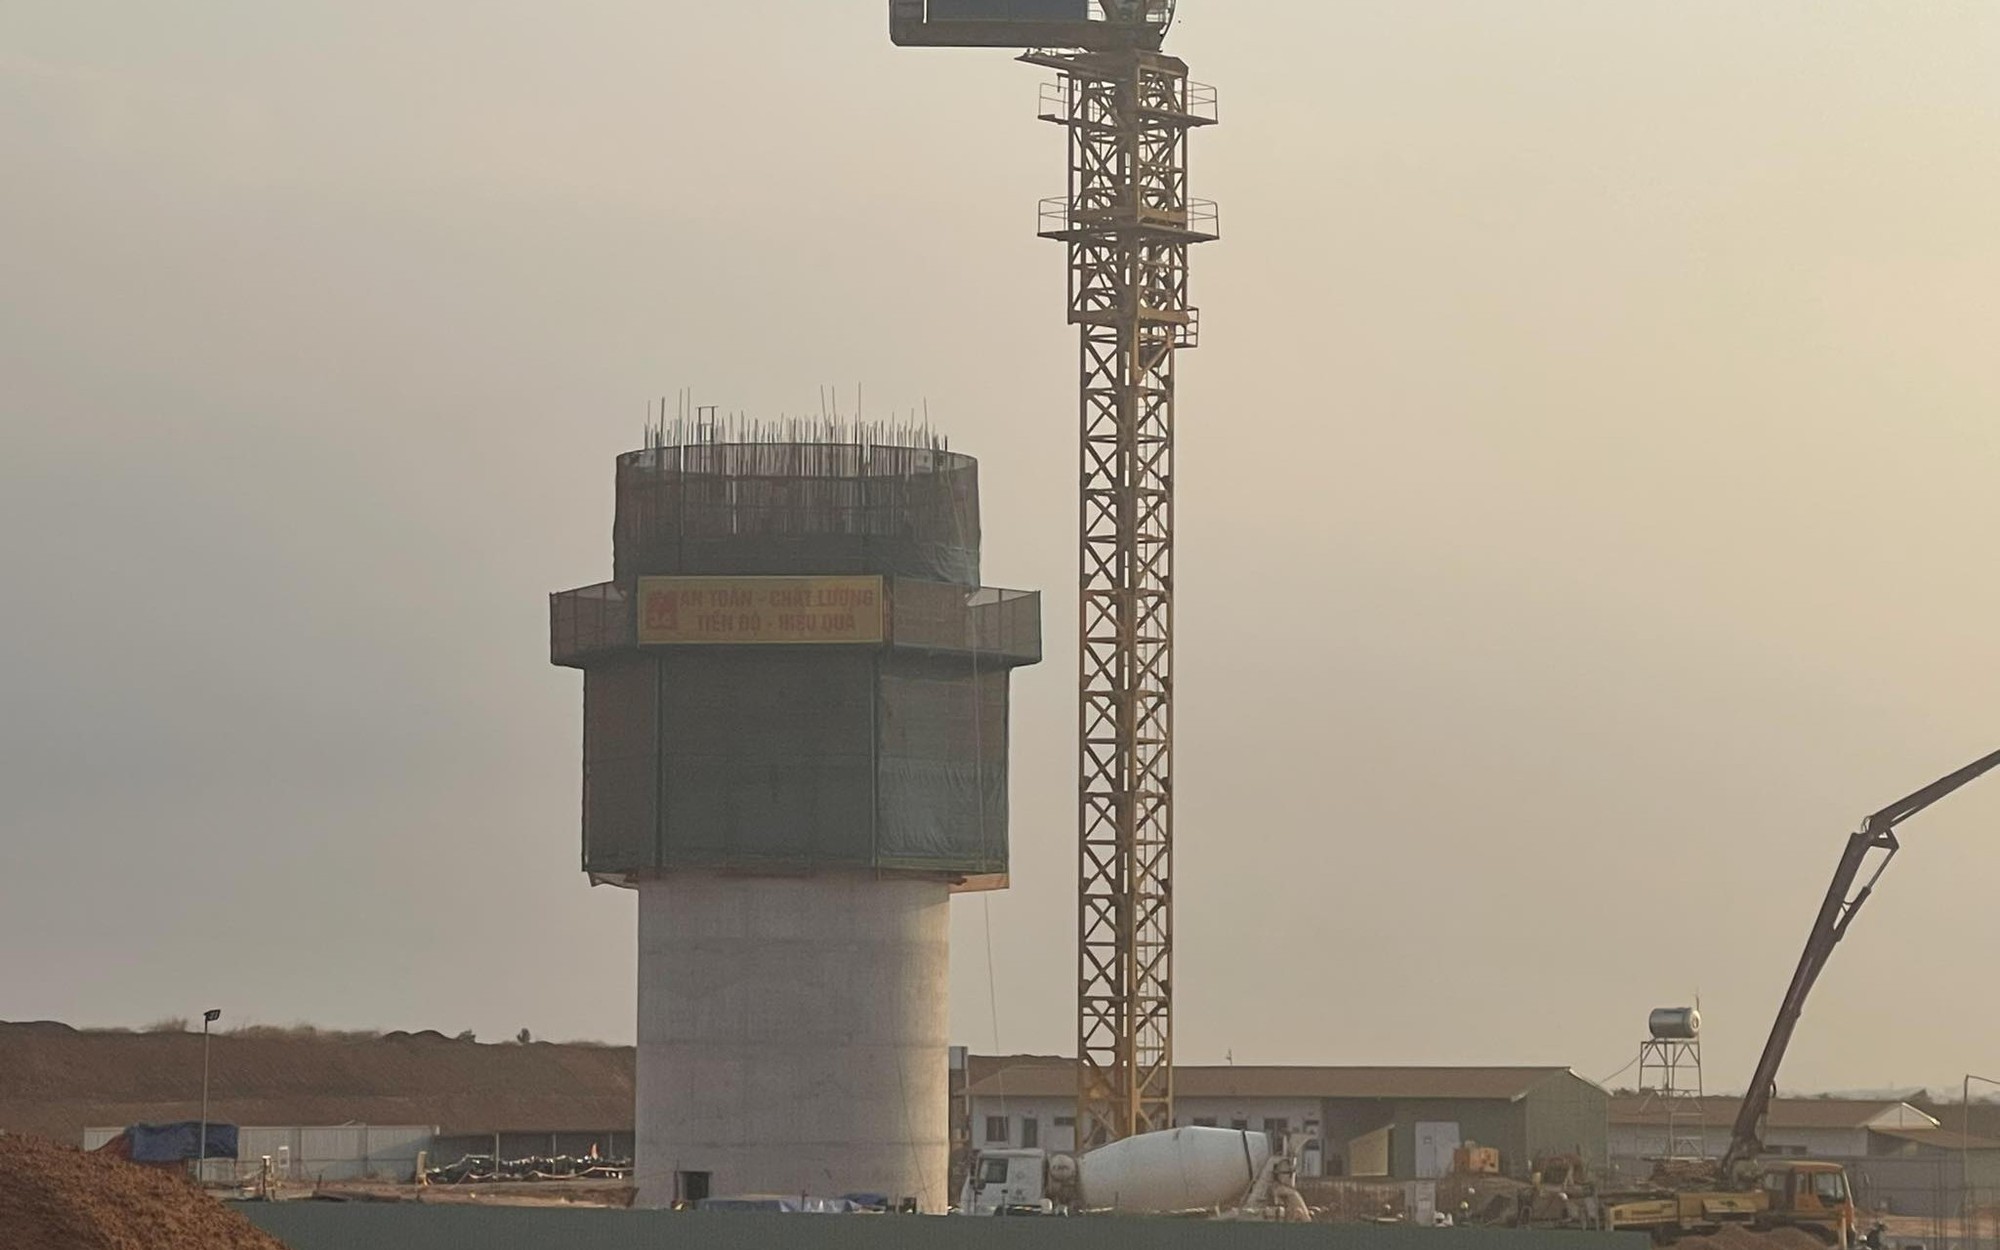 Thêm gói thầu tại dự án sân bay Long Thành 